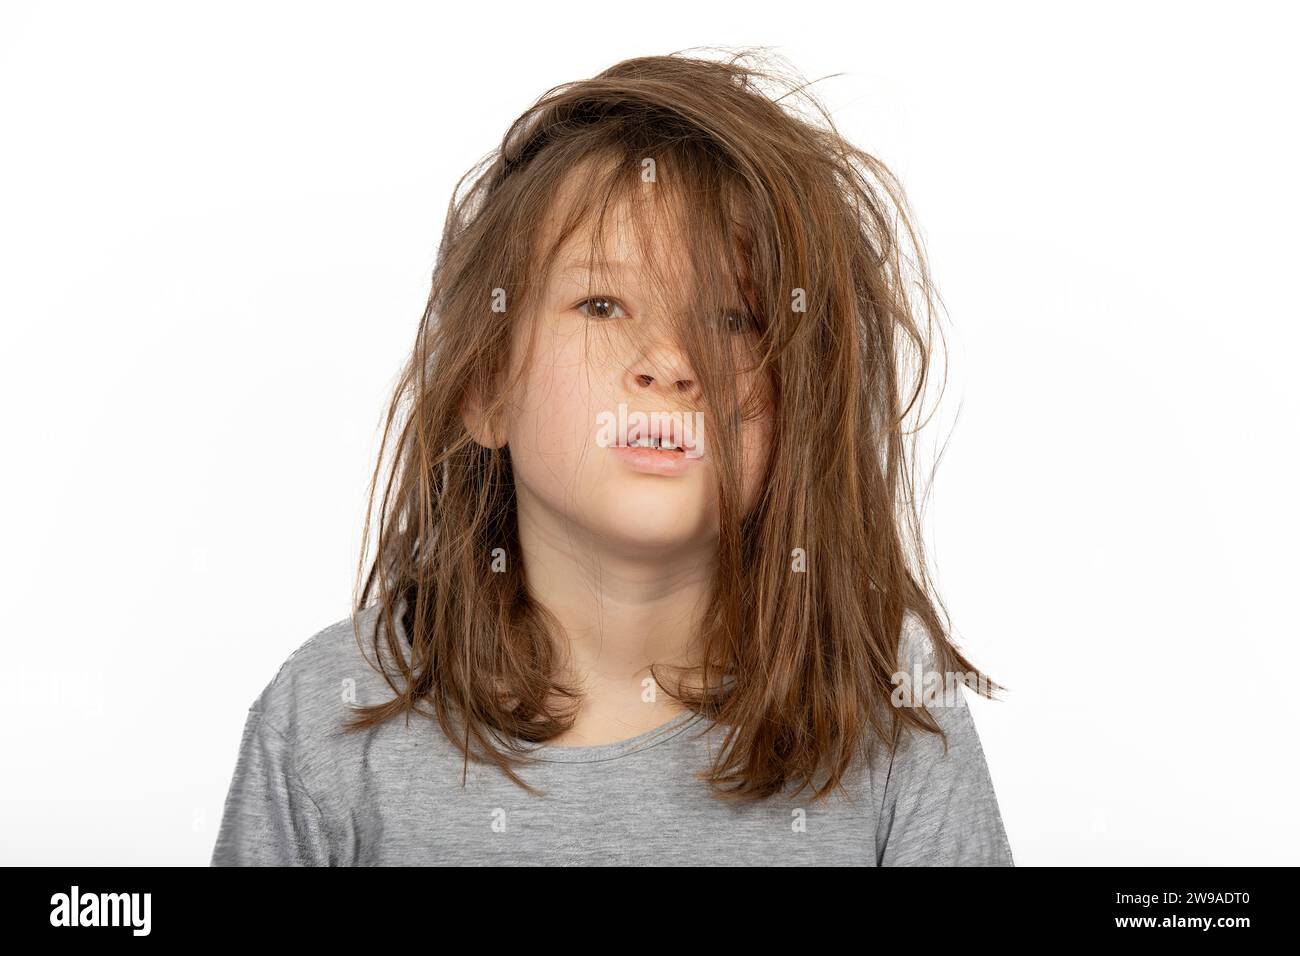 Grumpy Christmas Morning: Porträt eines jungen Mädchens mit einem Bad Hair Day auf weißem Hintergrund Stockfoto